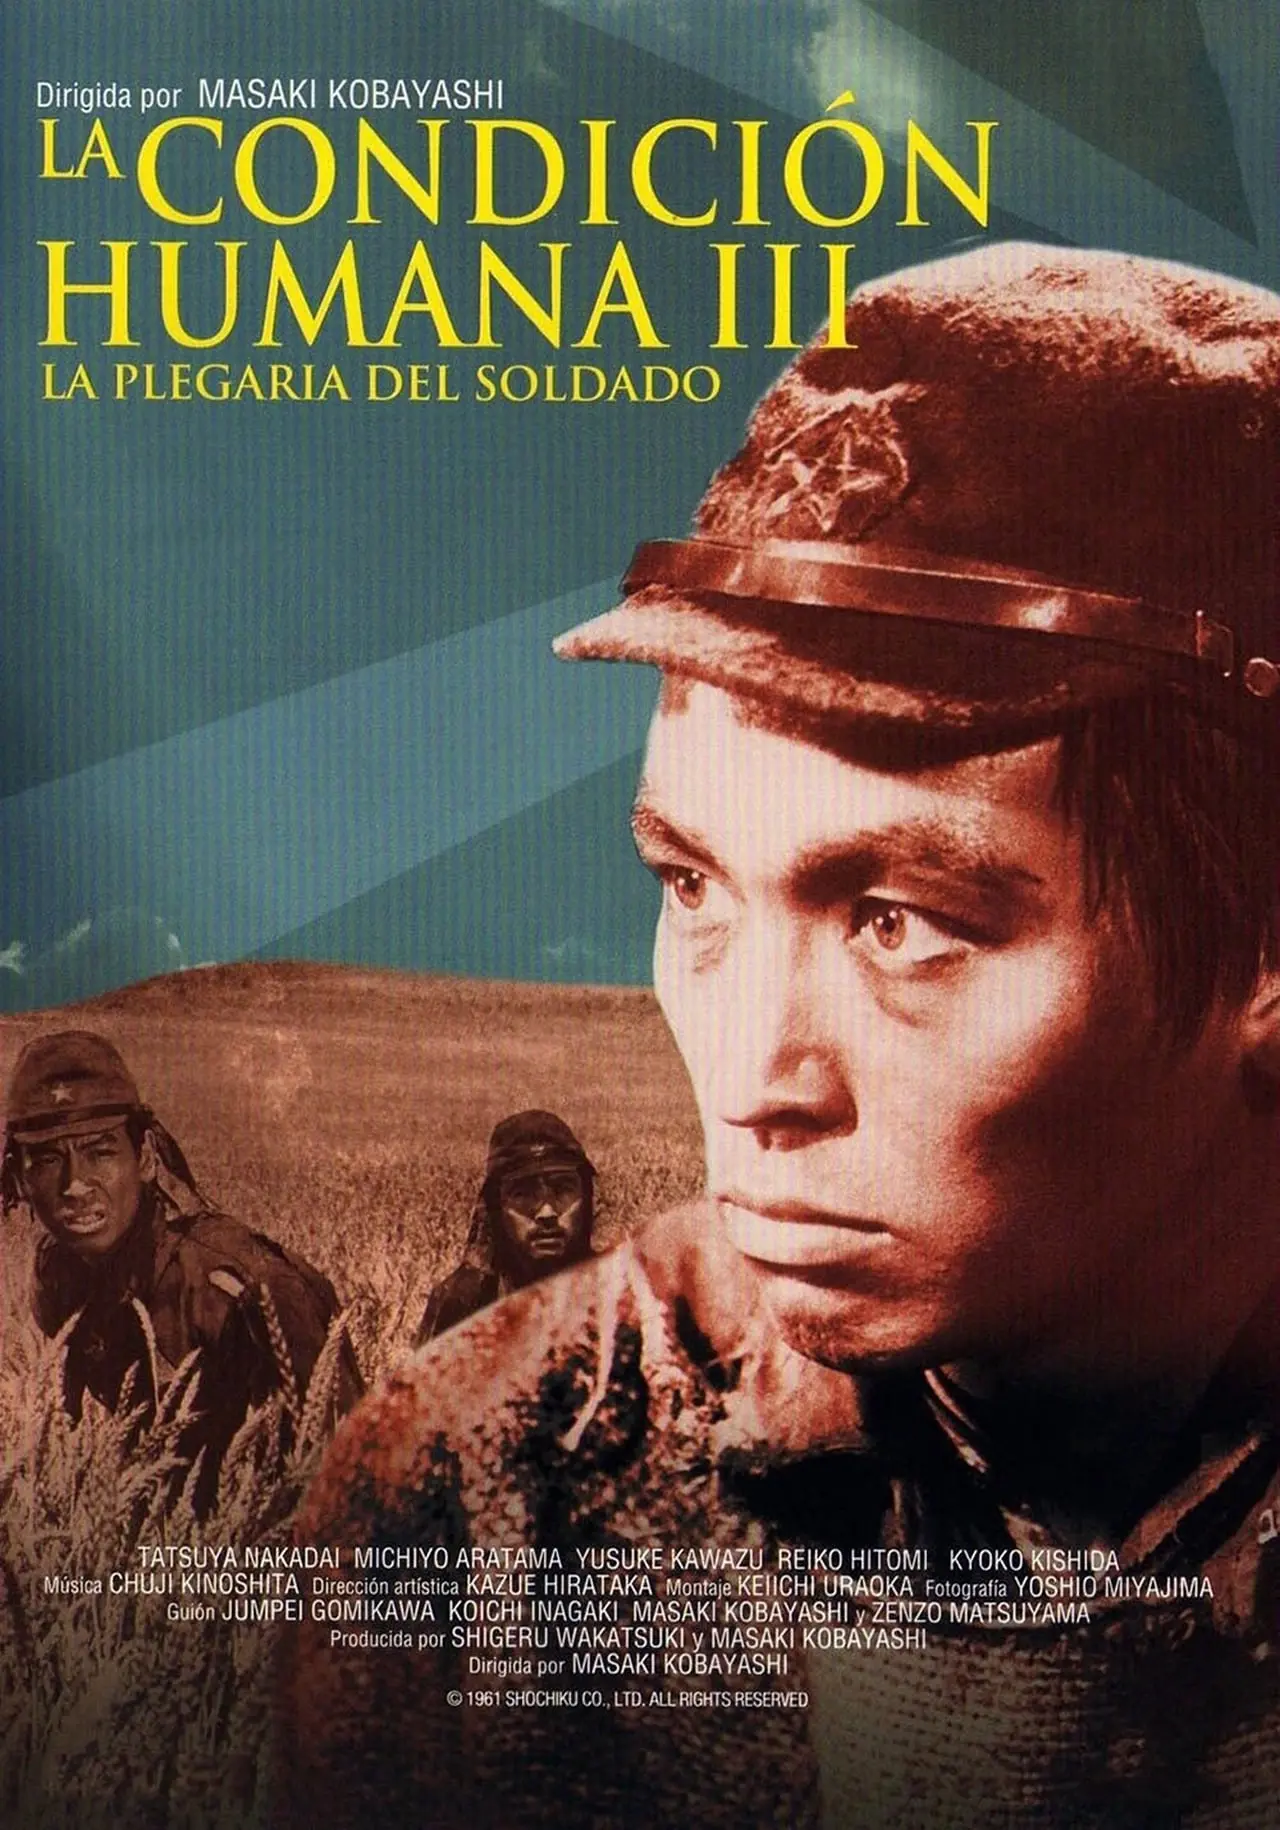 La condición Humana III: La plegaria del soldado (película 1961) - Tráiler.  resumen, reparto y dónde ver. Dirigida por Masaki Kobayashi | La Vanguardia